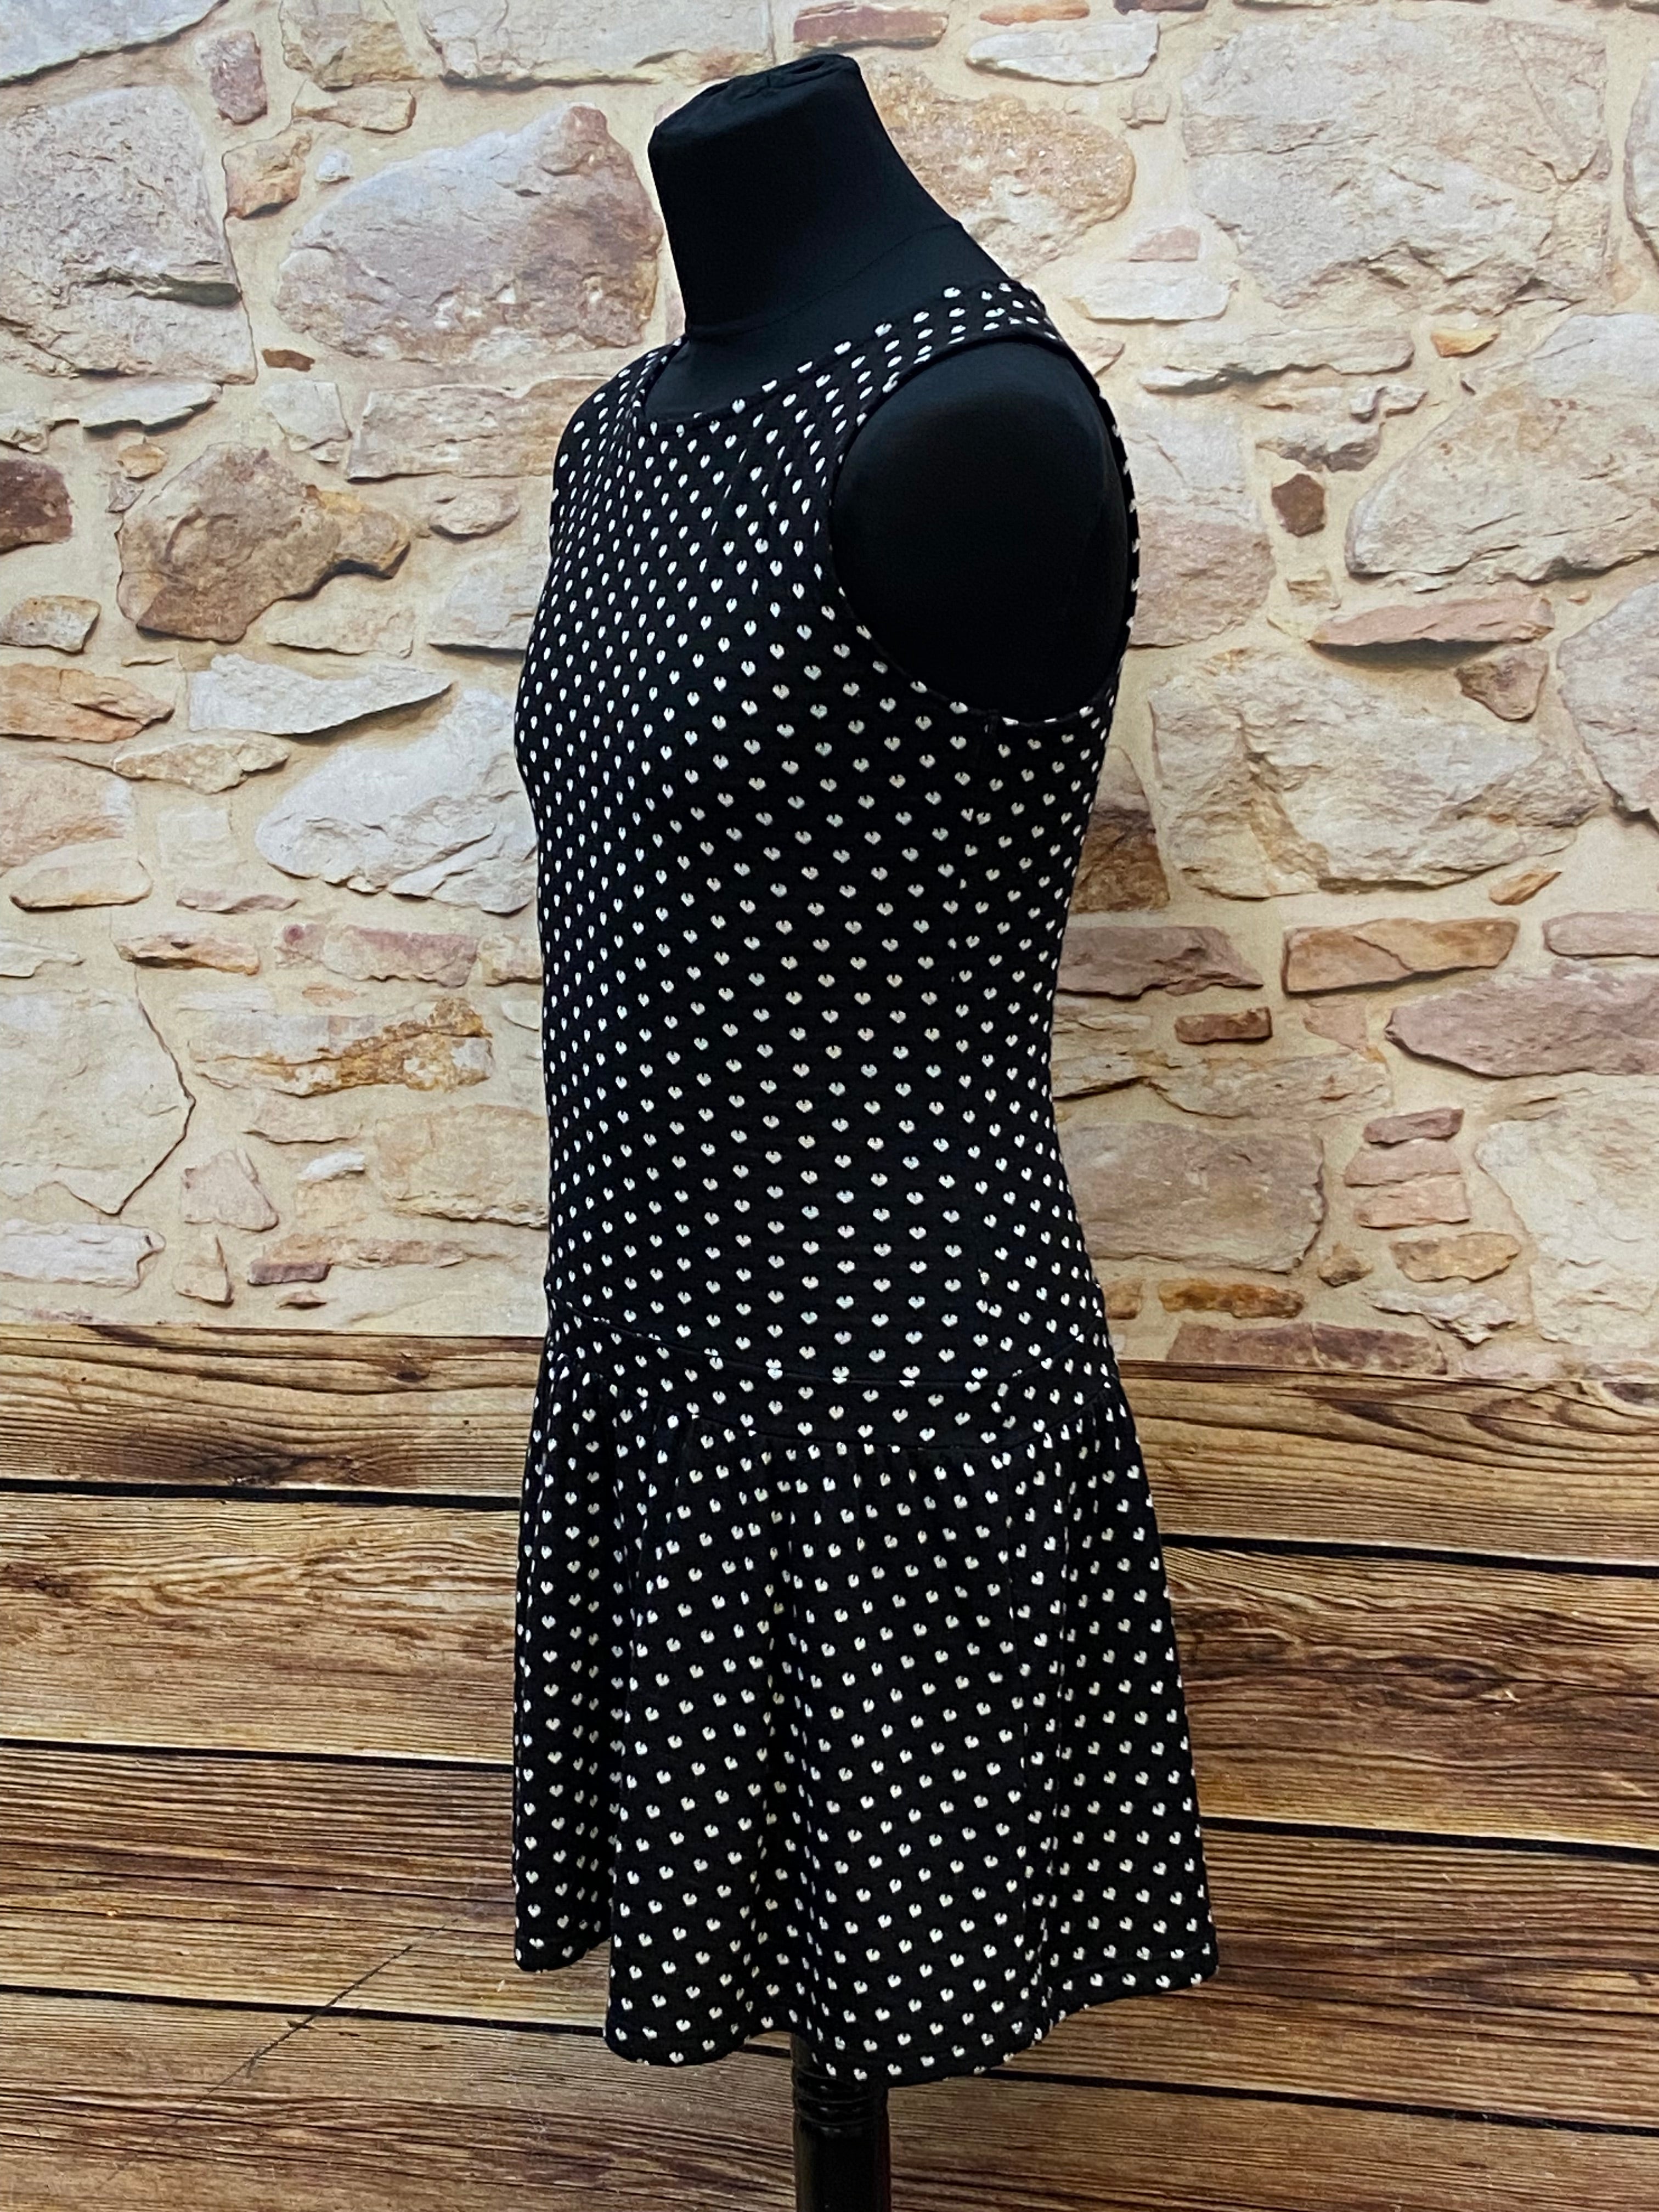 Schwarzes  Kleid mit Pünktchen 40er Jahre Stil, Vintage tiefe Taille Gr.M